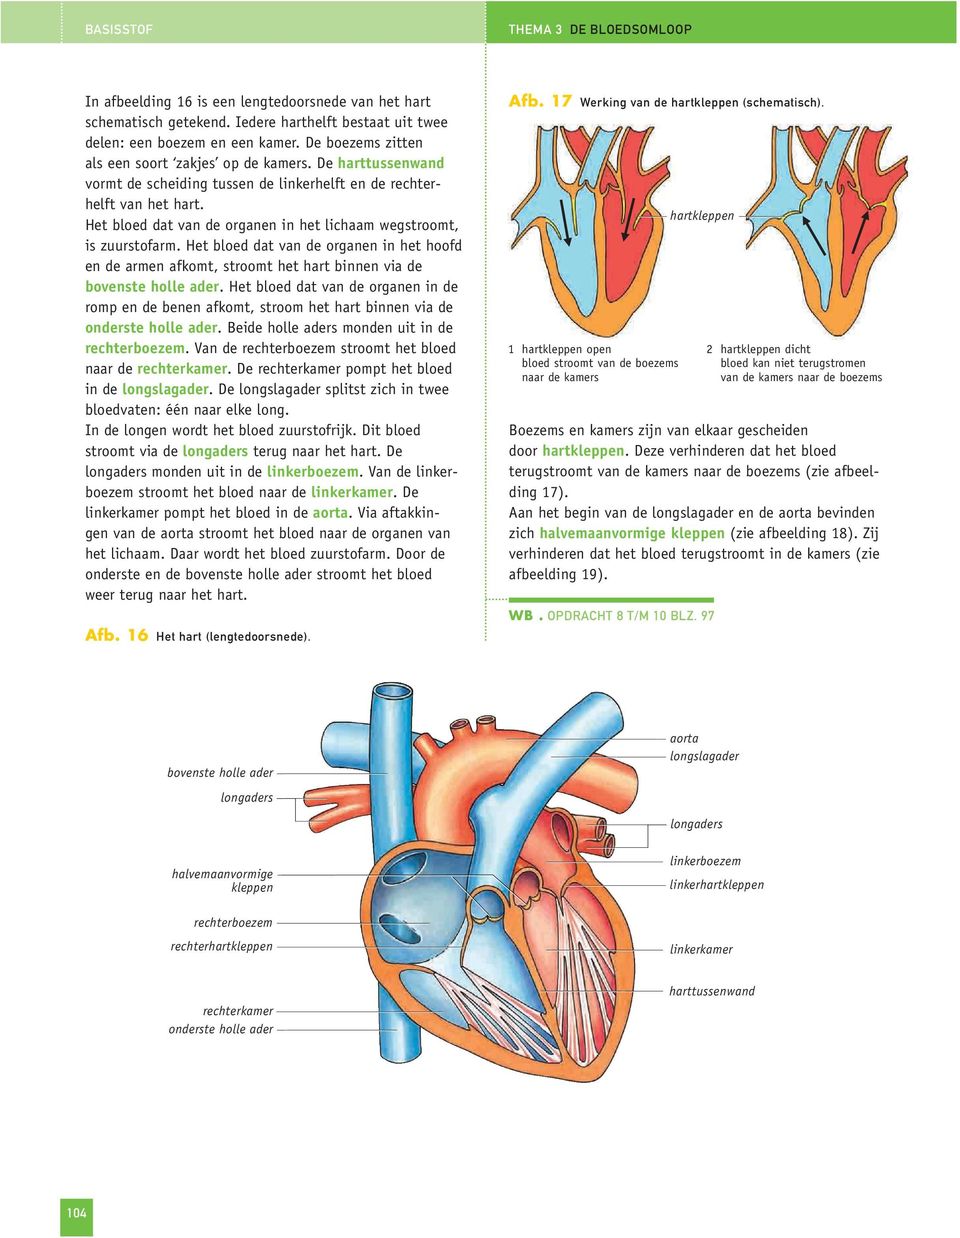 Het bloed dat van de organen in het lichaam wegstroomt, is zuurstofarm. Het bloed dat van de organen in het hoofd en de armen afkomt, stroomt het hart binnen via de bovenste holle ader.